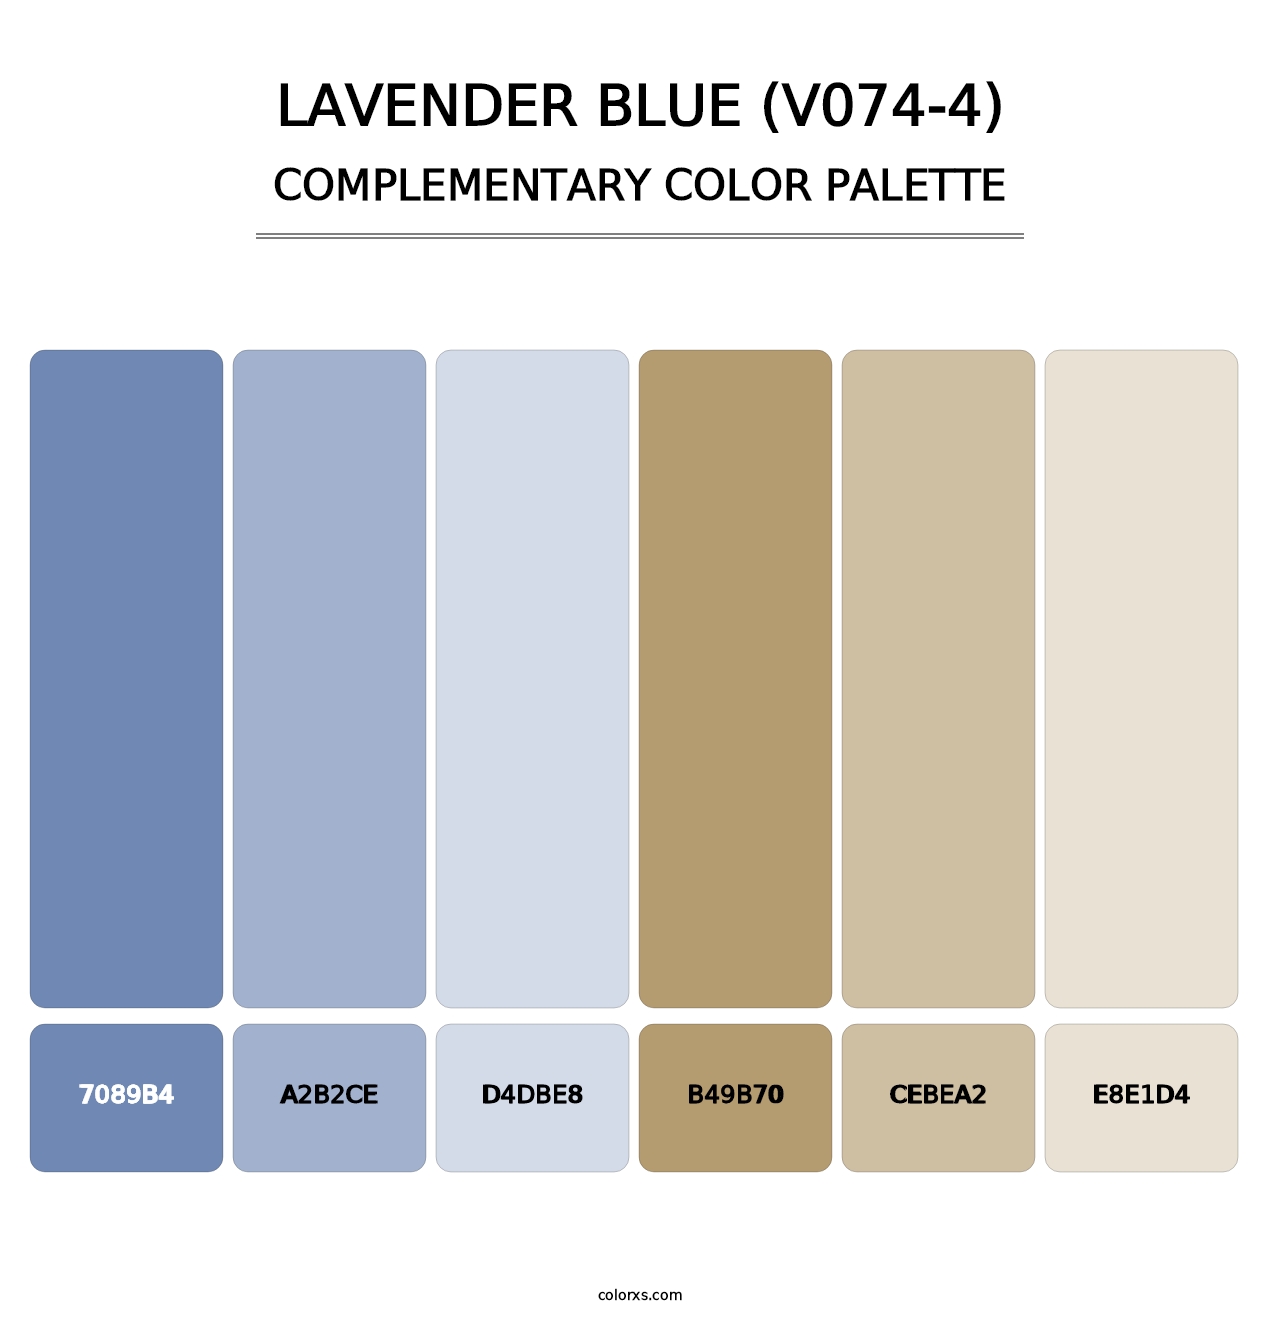 Lavender Blue (V074-4) - Complementary Color Palette